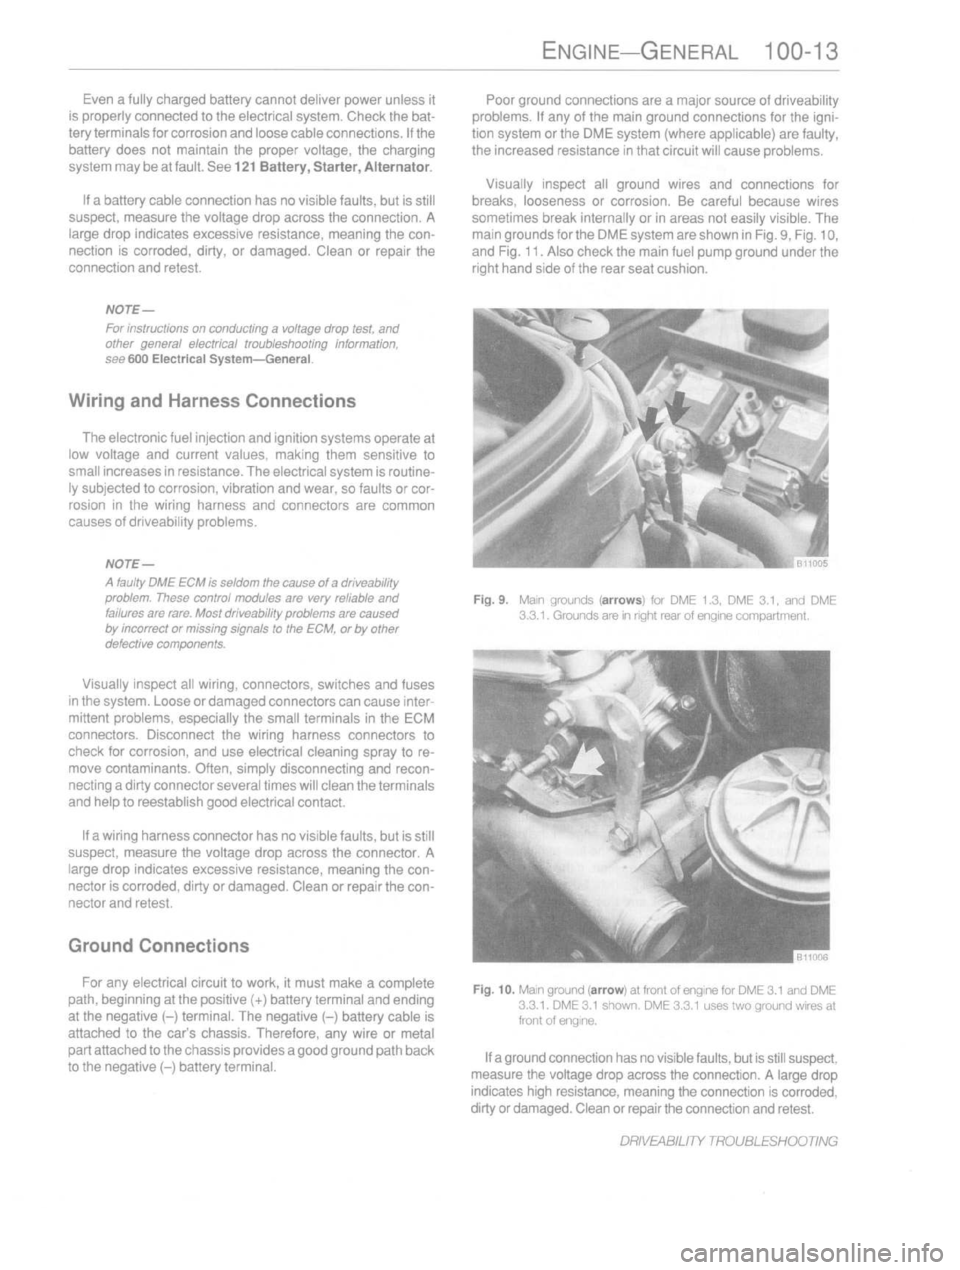 BMW 535i 1989 E34 Repair Manual 